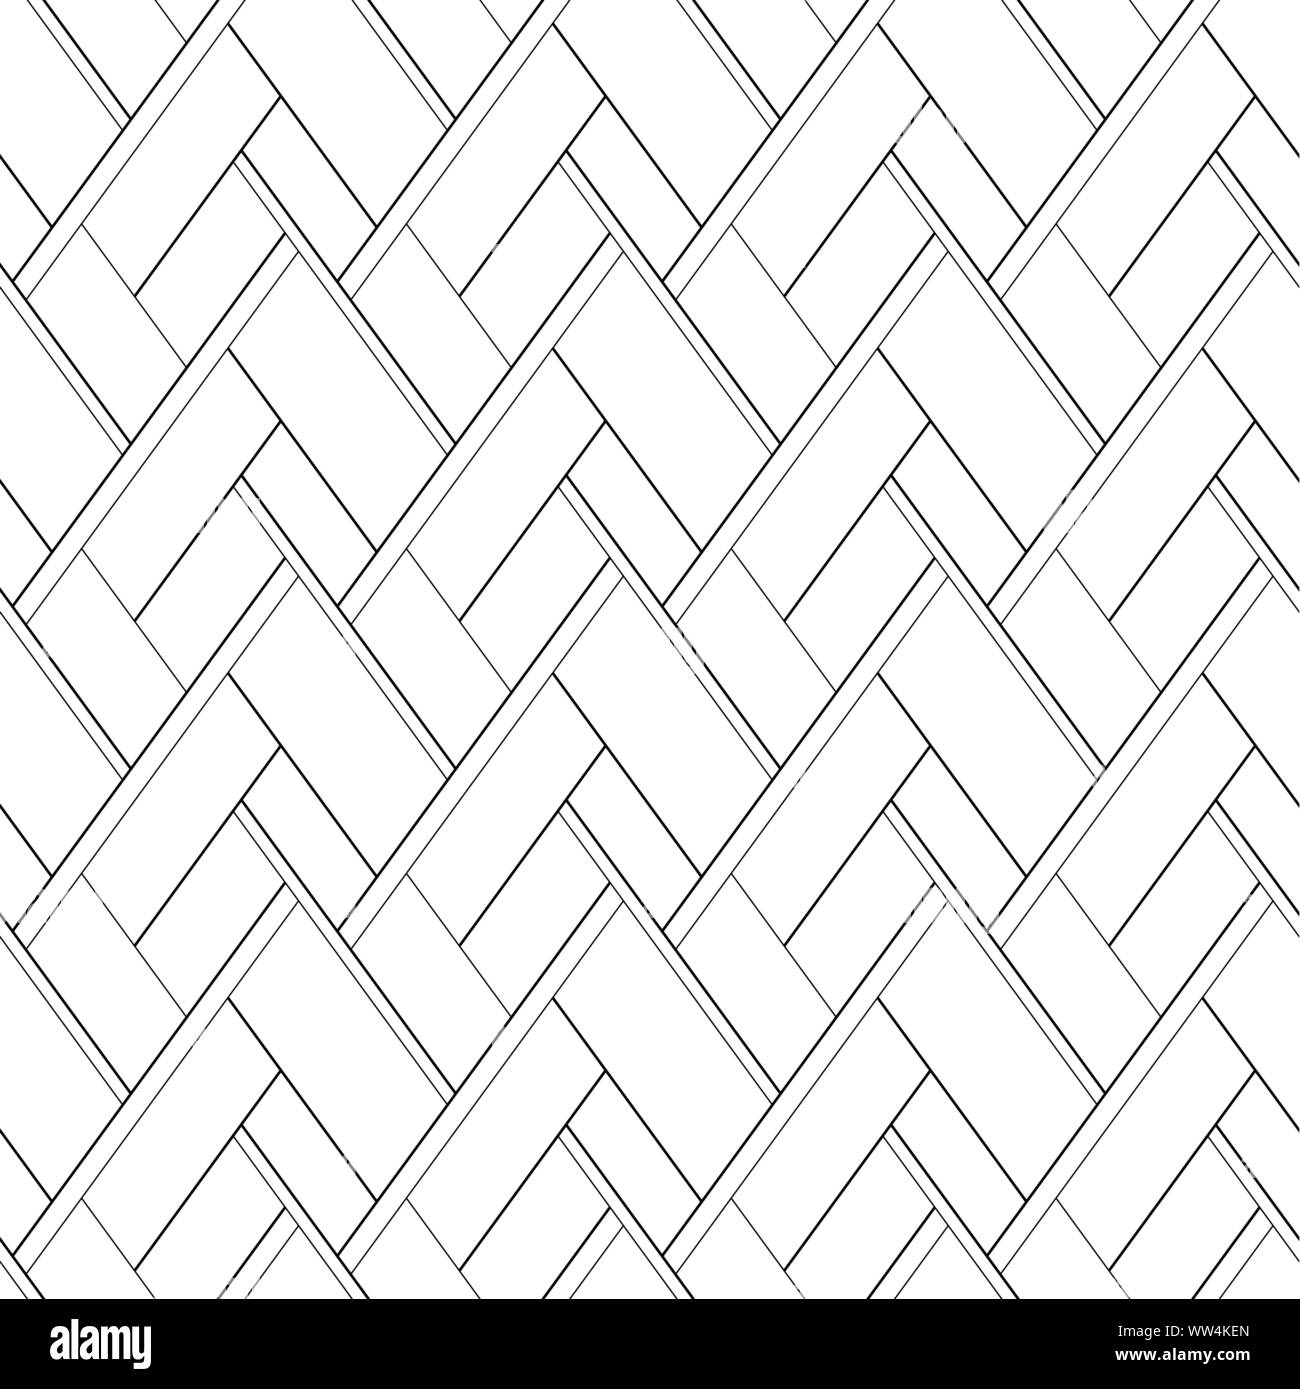 Vector seamless pattern. Abstract sfondo nero con linee trasversali su uno sfondo bianco Illustrazione Vettoriale